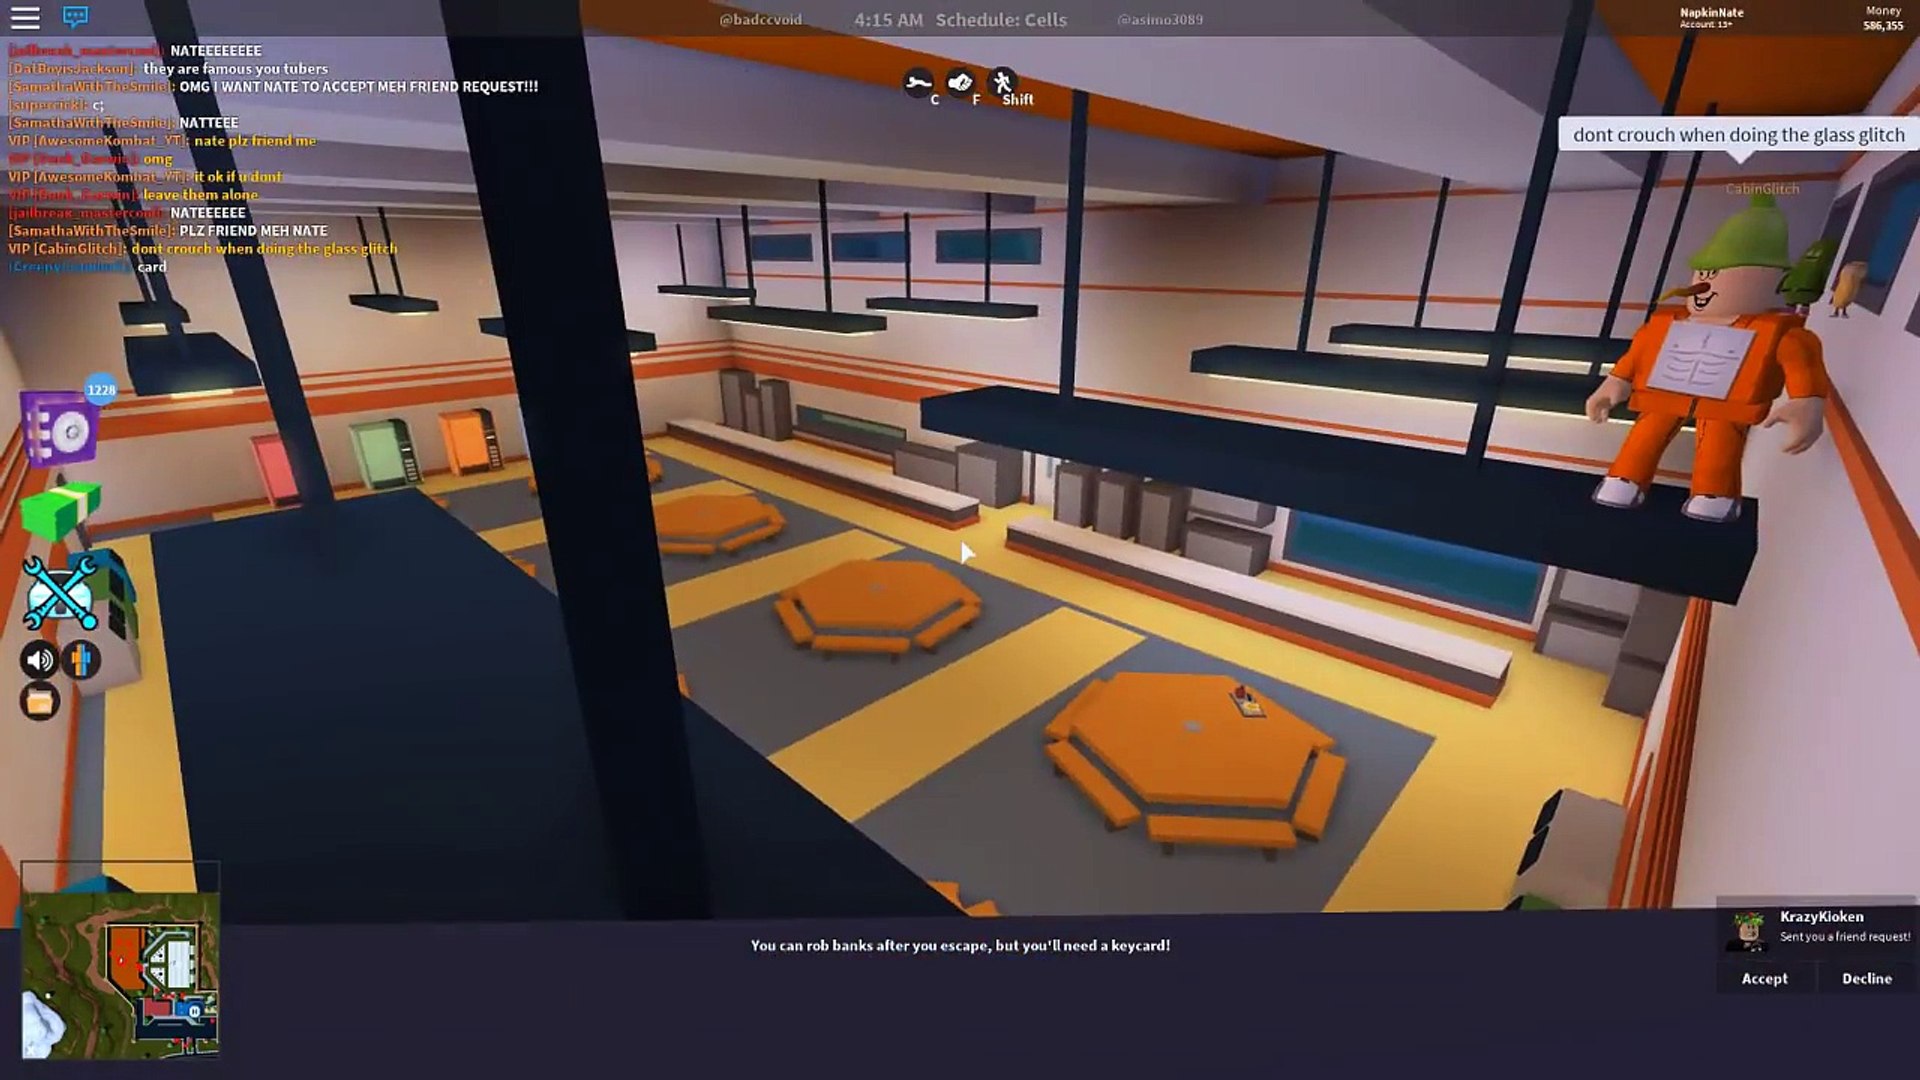 New Prison Escape Glitch Roblox Jailbreak Dailymotion Video - 2 player prison escape in roblox jailbreak roblox livestream